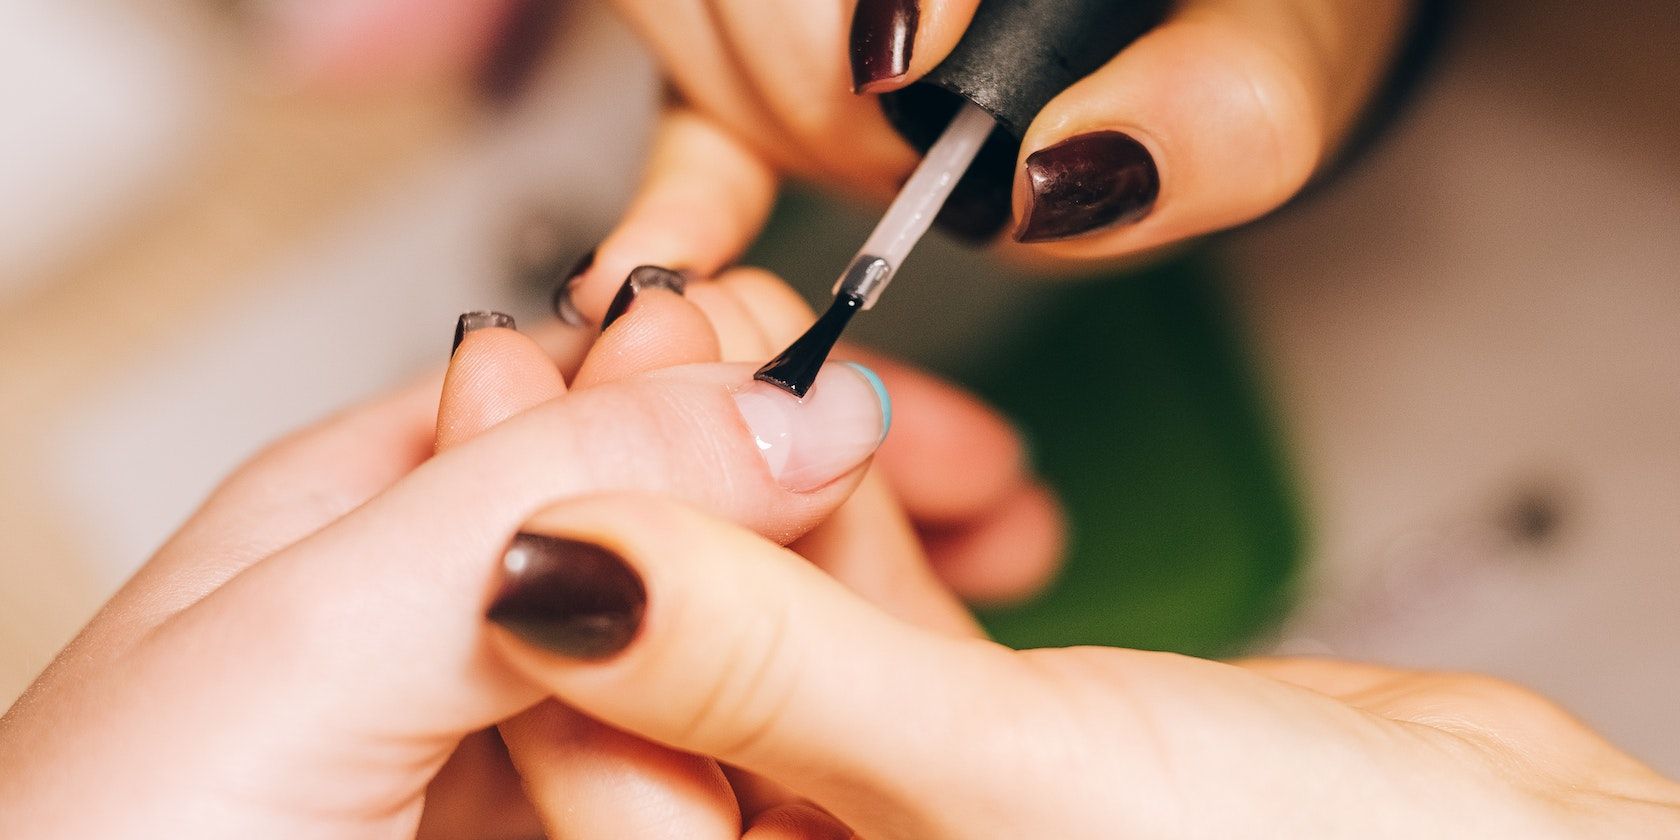 A person getting a nail polish